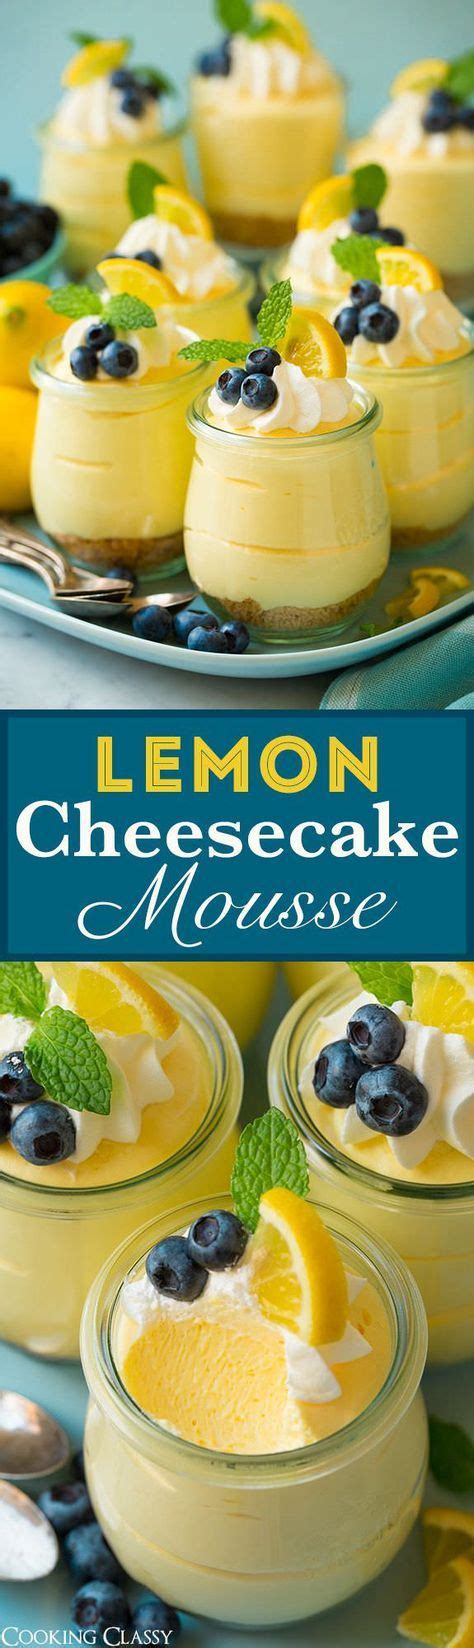 hacer esta deliciosa mousse de tarta de limón con sólo